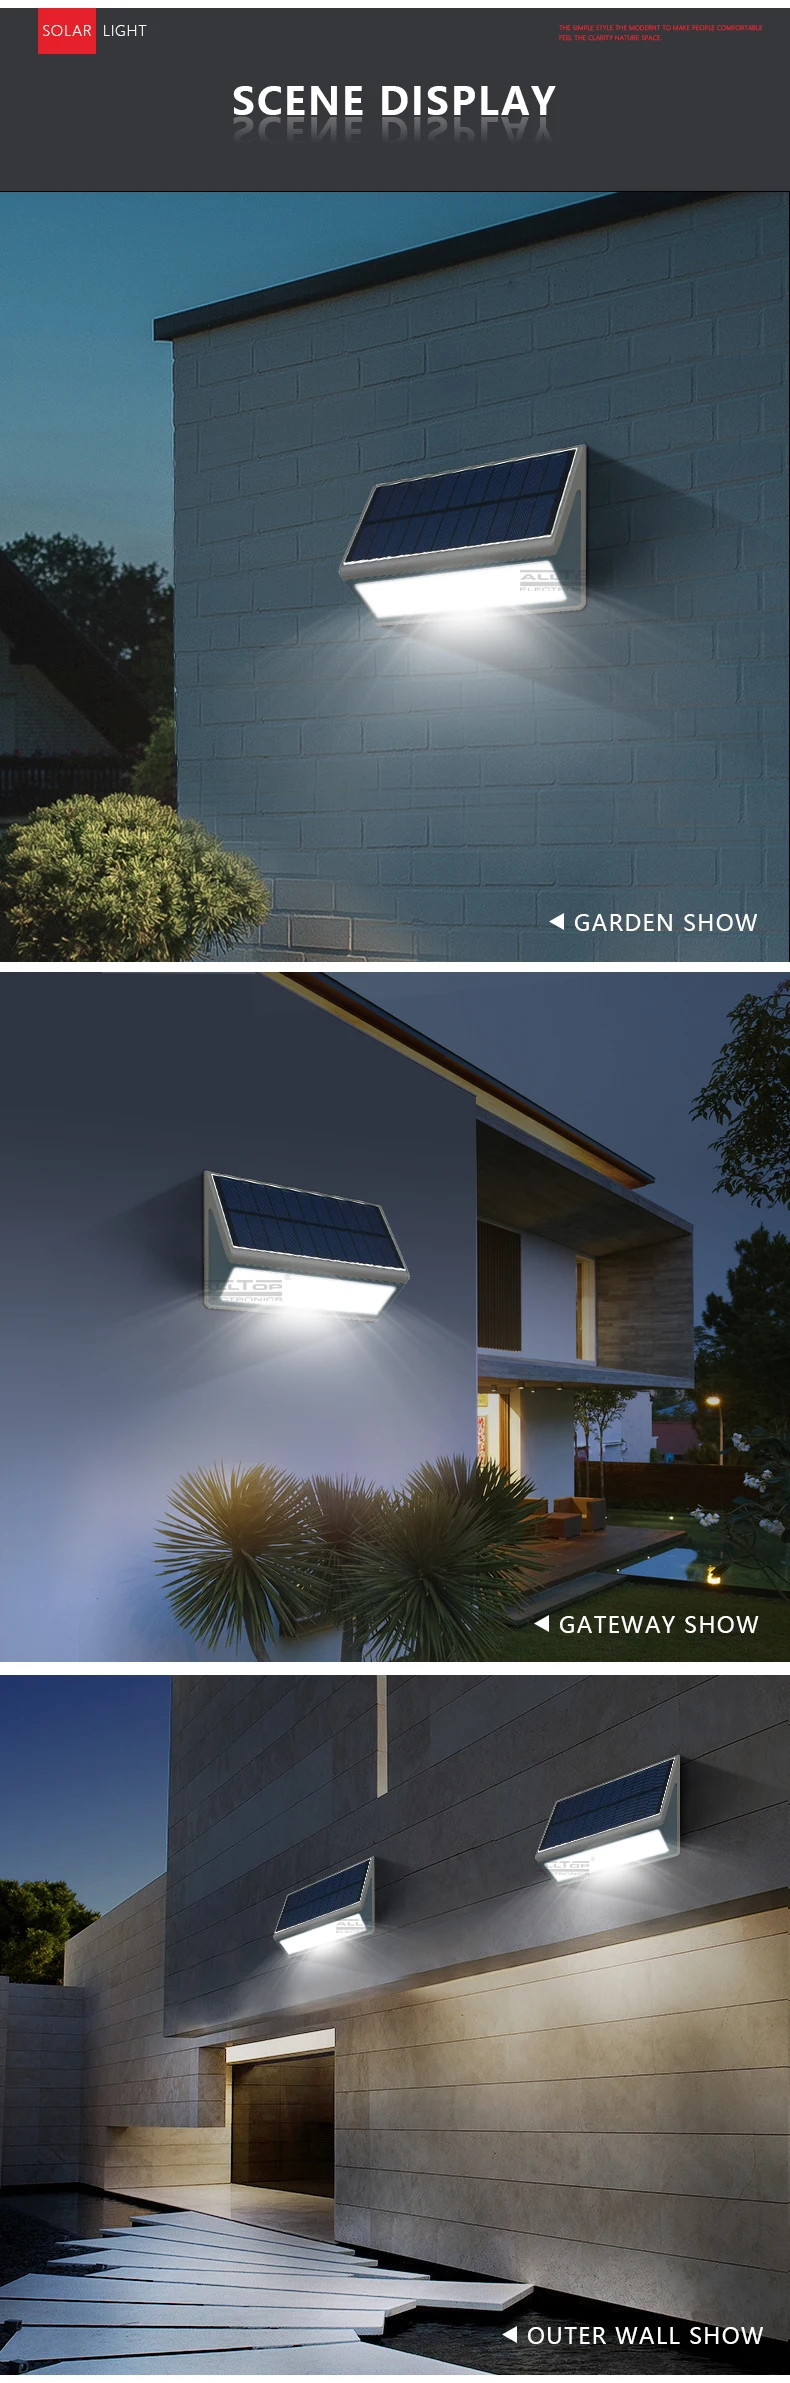 ALLTOP Hot sale ip65 outdoor waterproof PIR Sensor 3w 5w solar led wall light